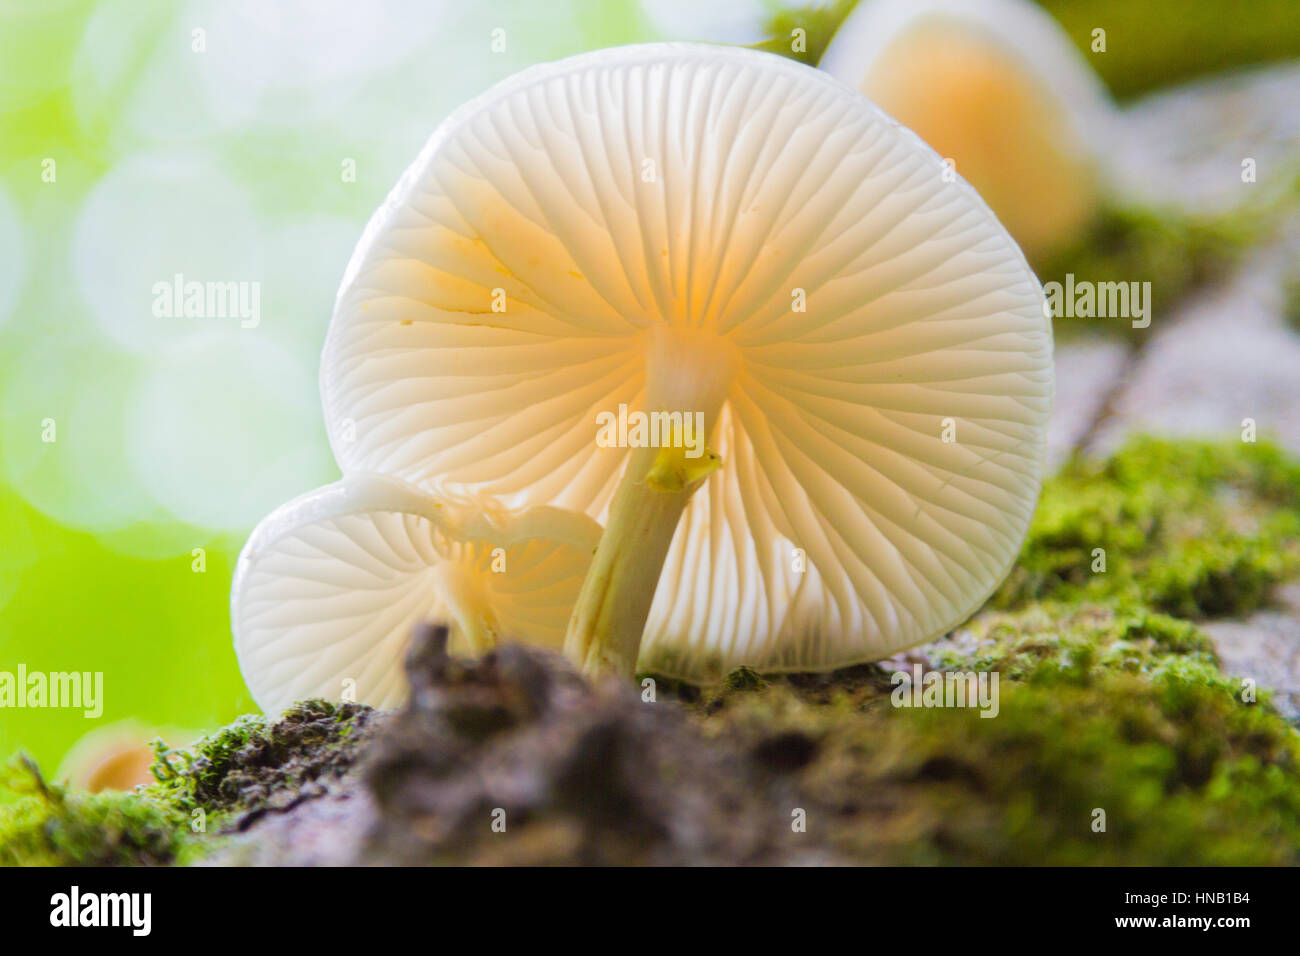 Foto von einem weißen Pilz. Von unten mit Makro-Objektiv aufgenommen. Schöne Details des Pilzes sind sichtbar. Stockfoto